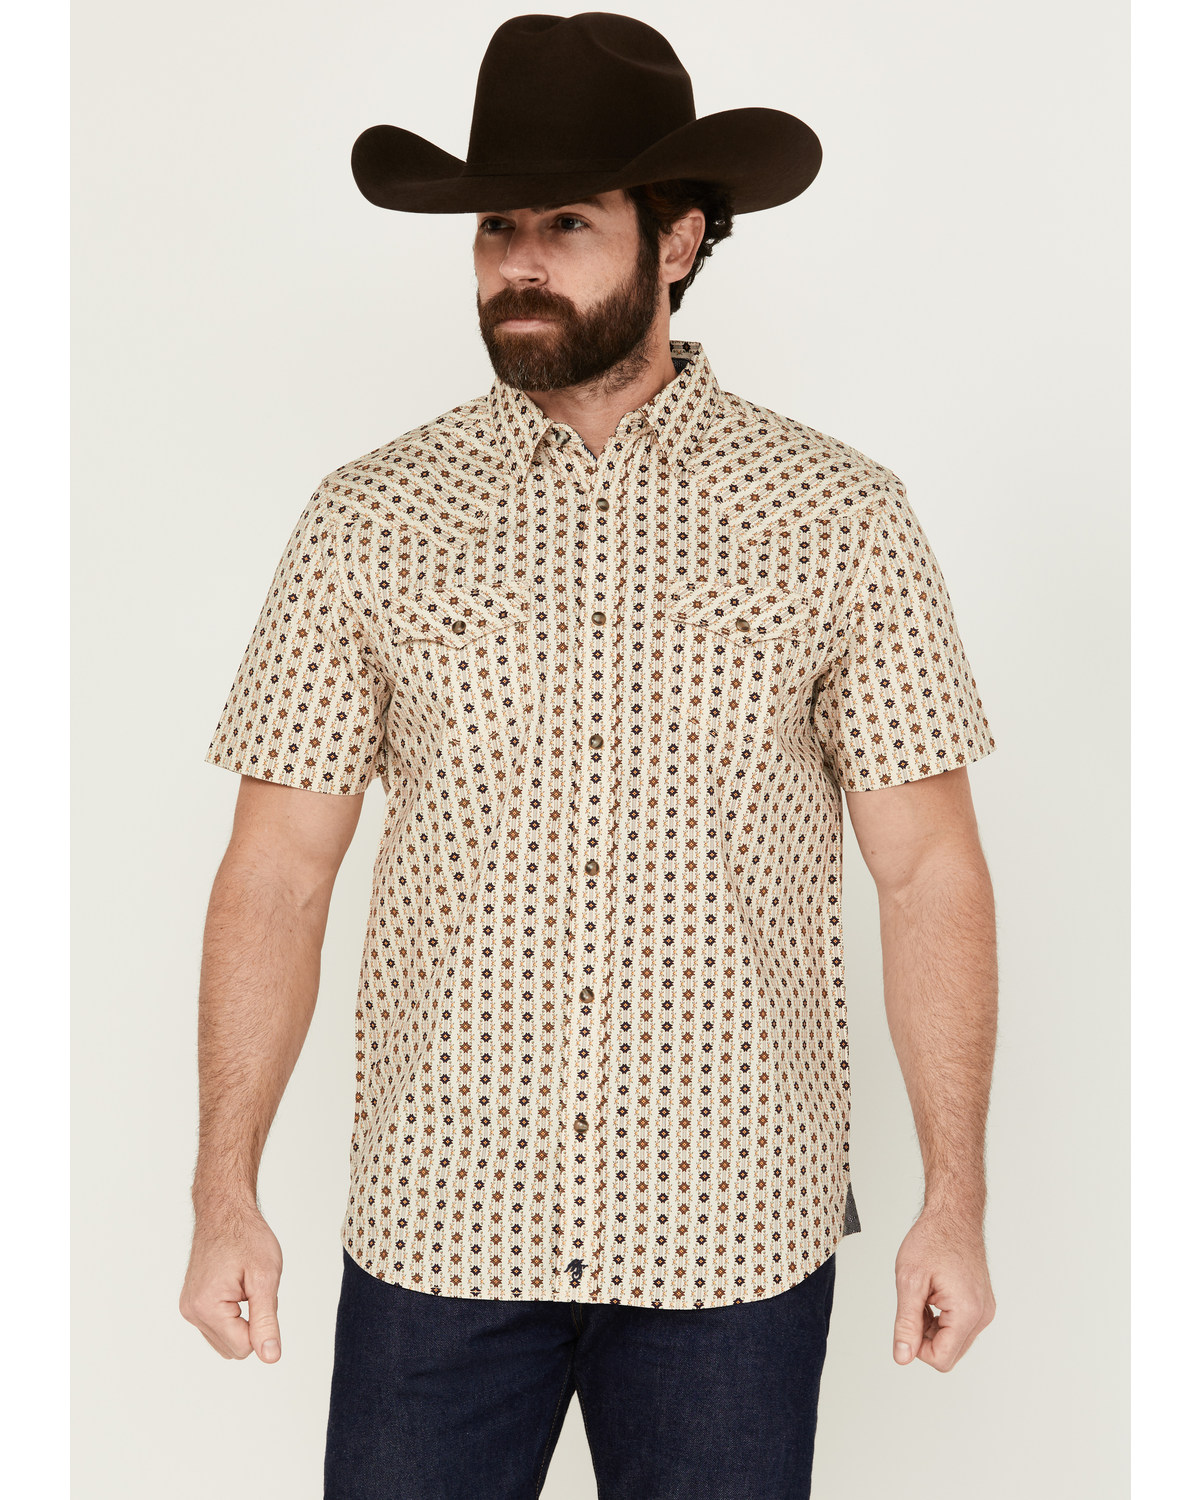 Moonshine Spirit Men's Spurs Floral Striped Short Sleeve Snap Western Shirt